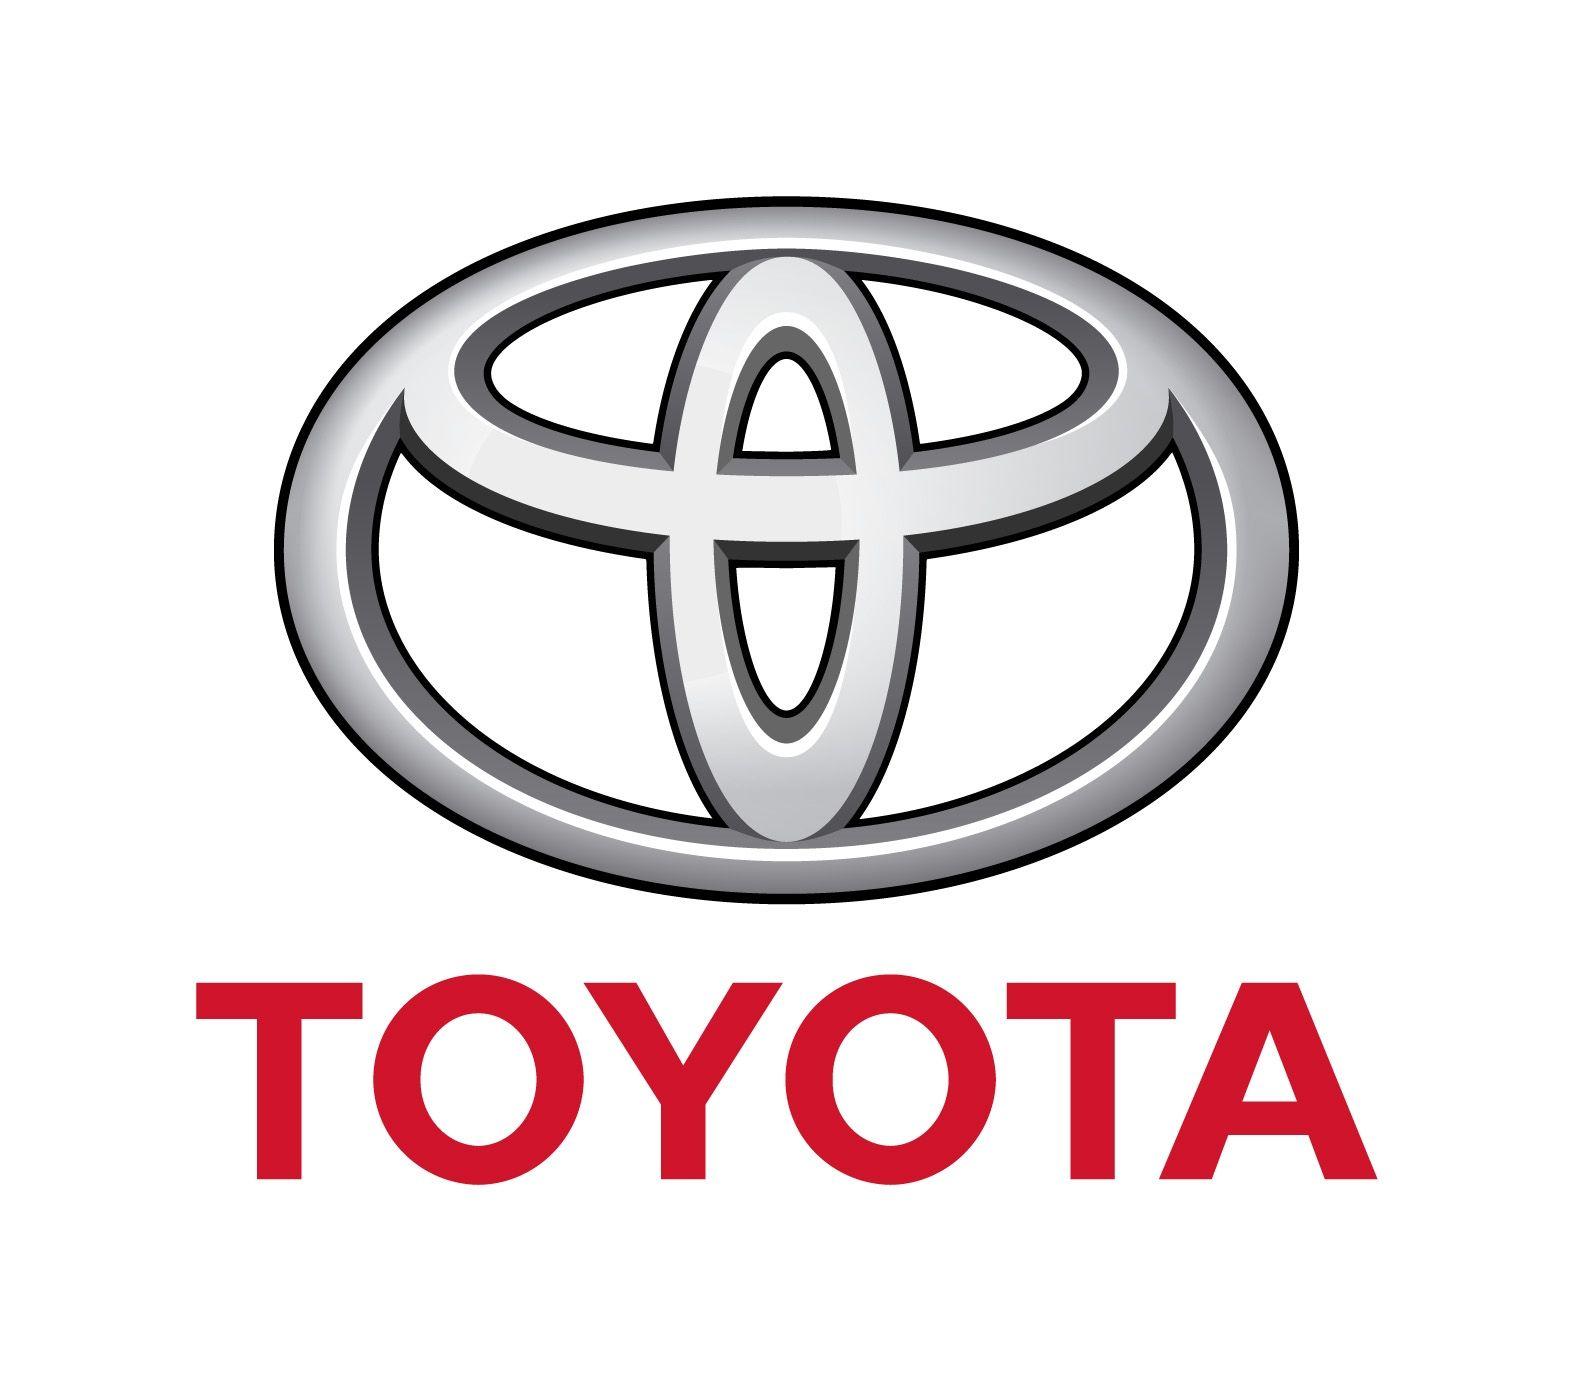 Toyota Car Logo - Toyota Logo, Toyota Car Symbol Meaning and History. Car Brand Names.com